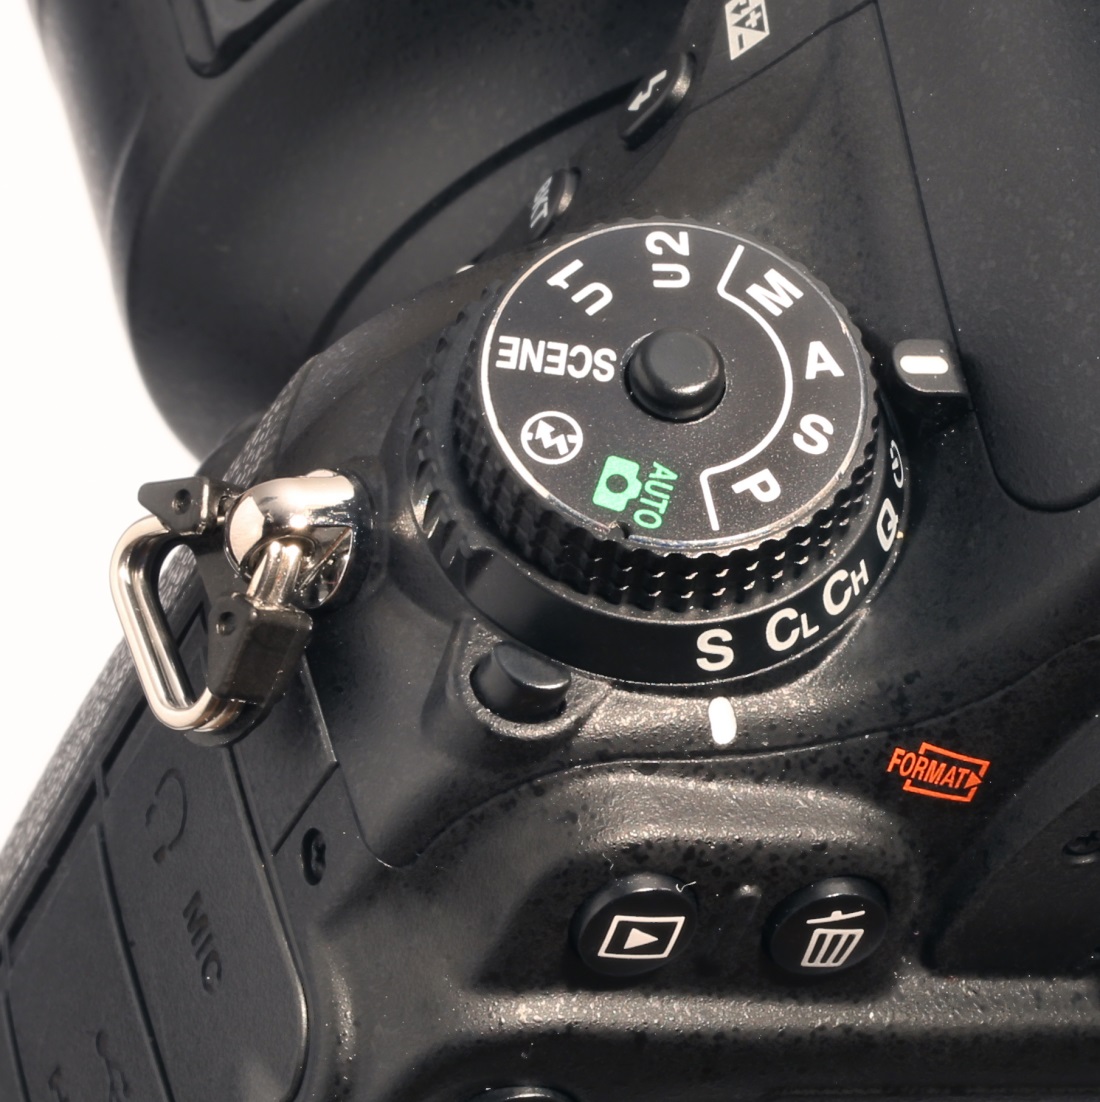 Зеркальная фотокамера Nikon D600 - колесико